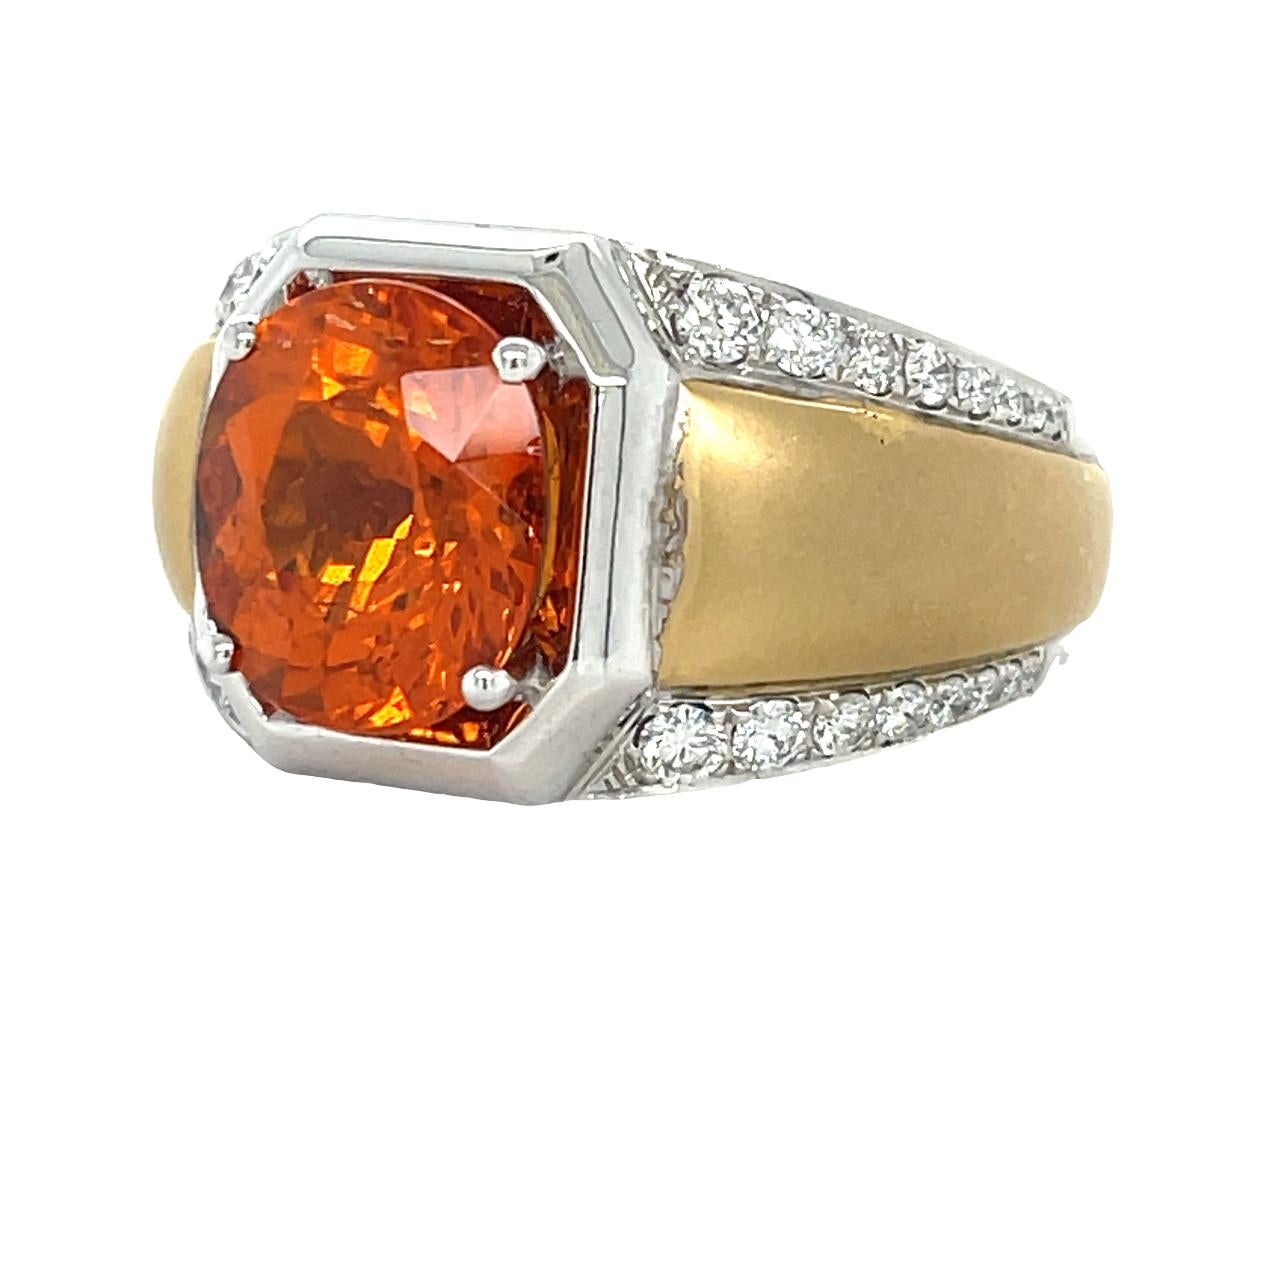 Diese einzigartige Two Tone Herrenring hat eine lebendige oragne 12x11 mm Oval geschnitten Spessartite (Orange Granat) Mittelstein. 32 runde, funkelnde Diamanten im Brillantschliff sorgen für den perfekten Akzent auf dem Schaft. Der Ring ist in 14